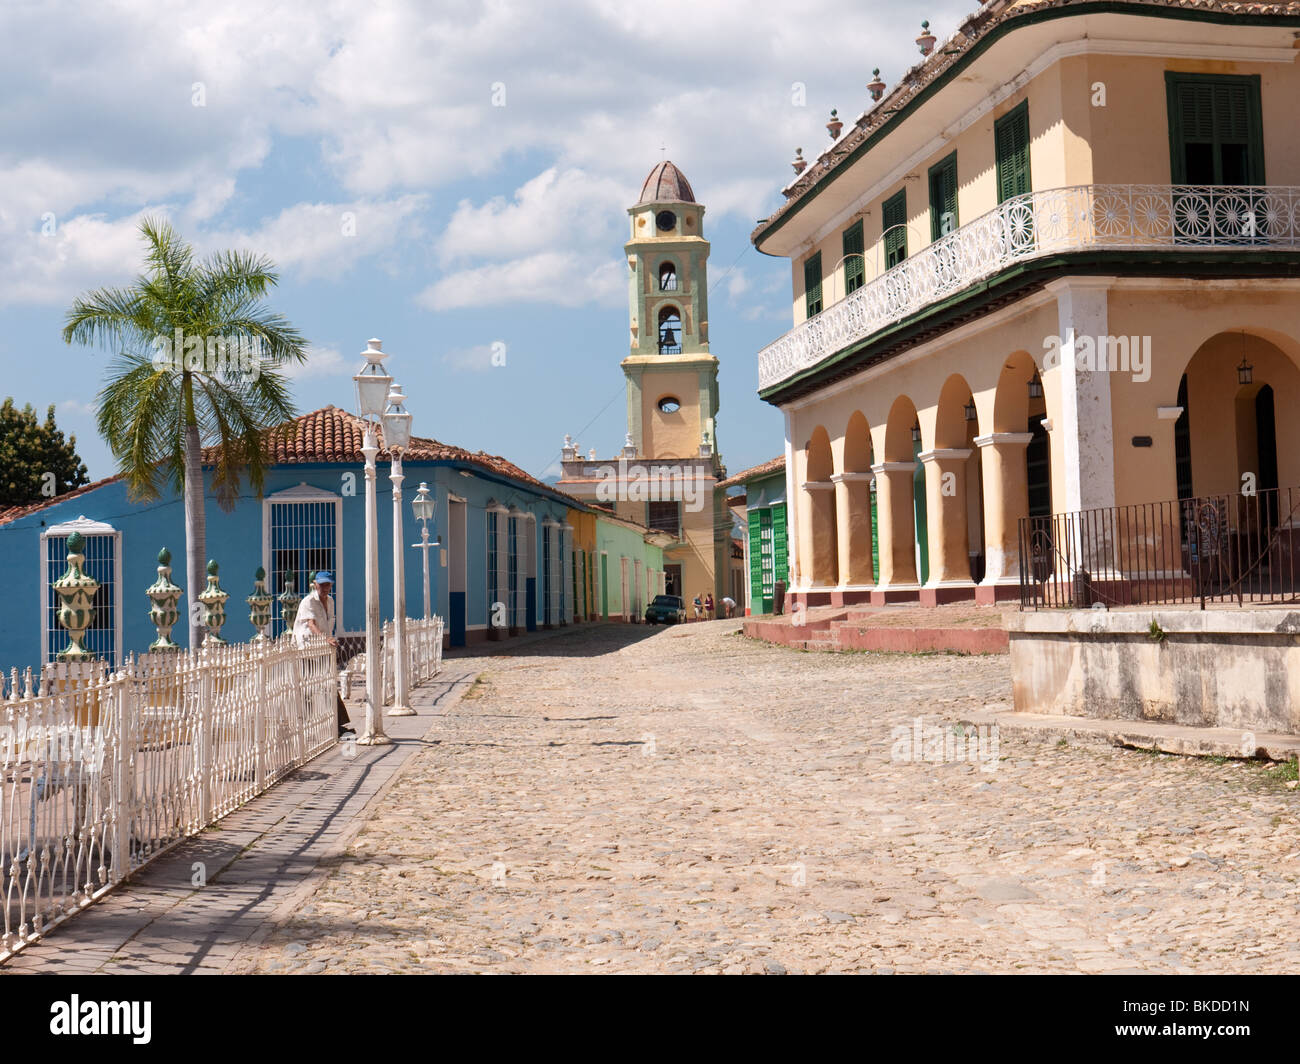 Coloniale cubano Architeture e chiesa nel centro coloniale della città vecchia, Trinidad, Cuba Foto Stock